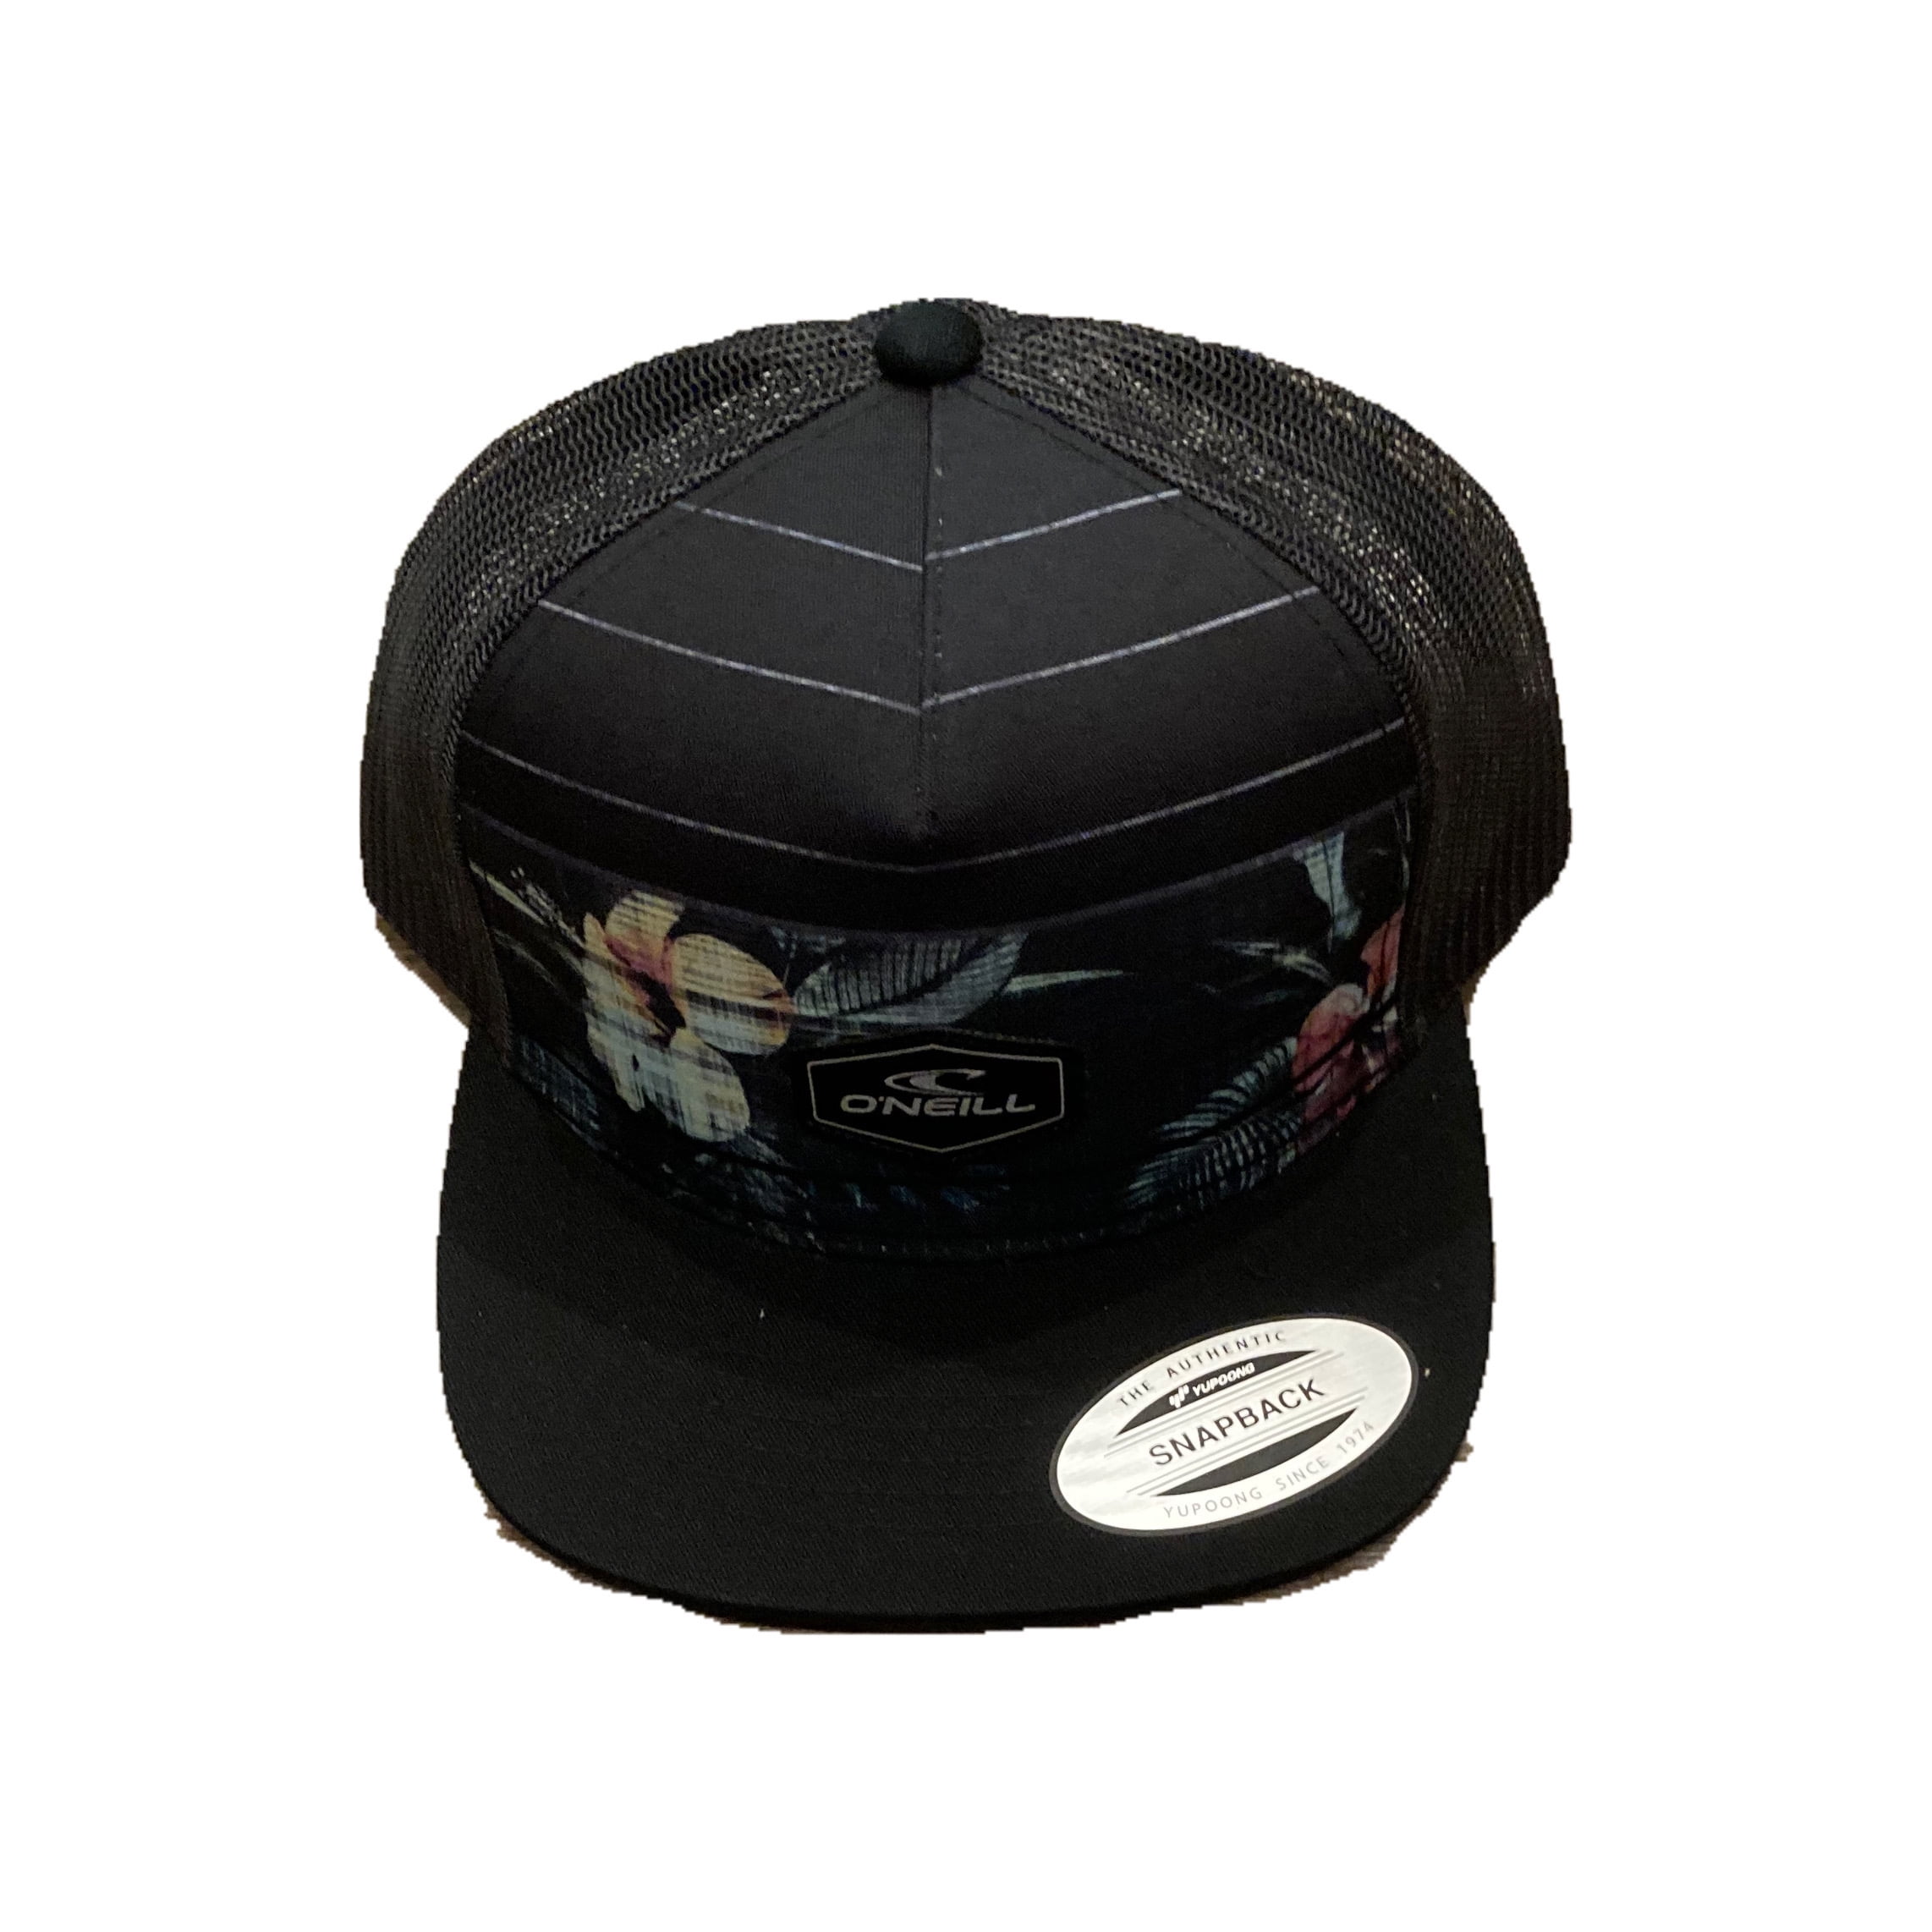 New O'Neill Sun Kiss Camo Womens ONeill Snapback Trucker Cap Hat 